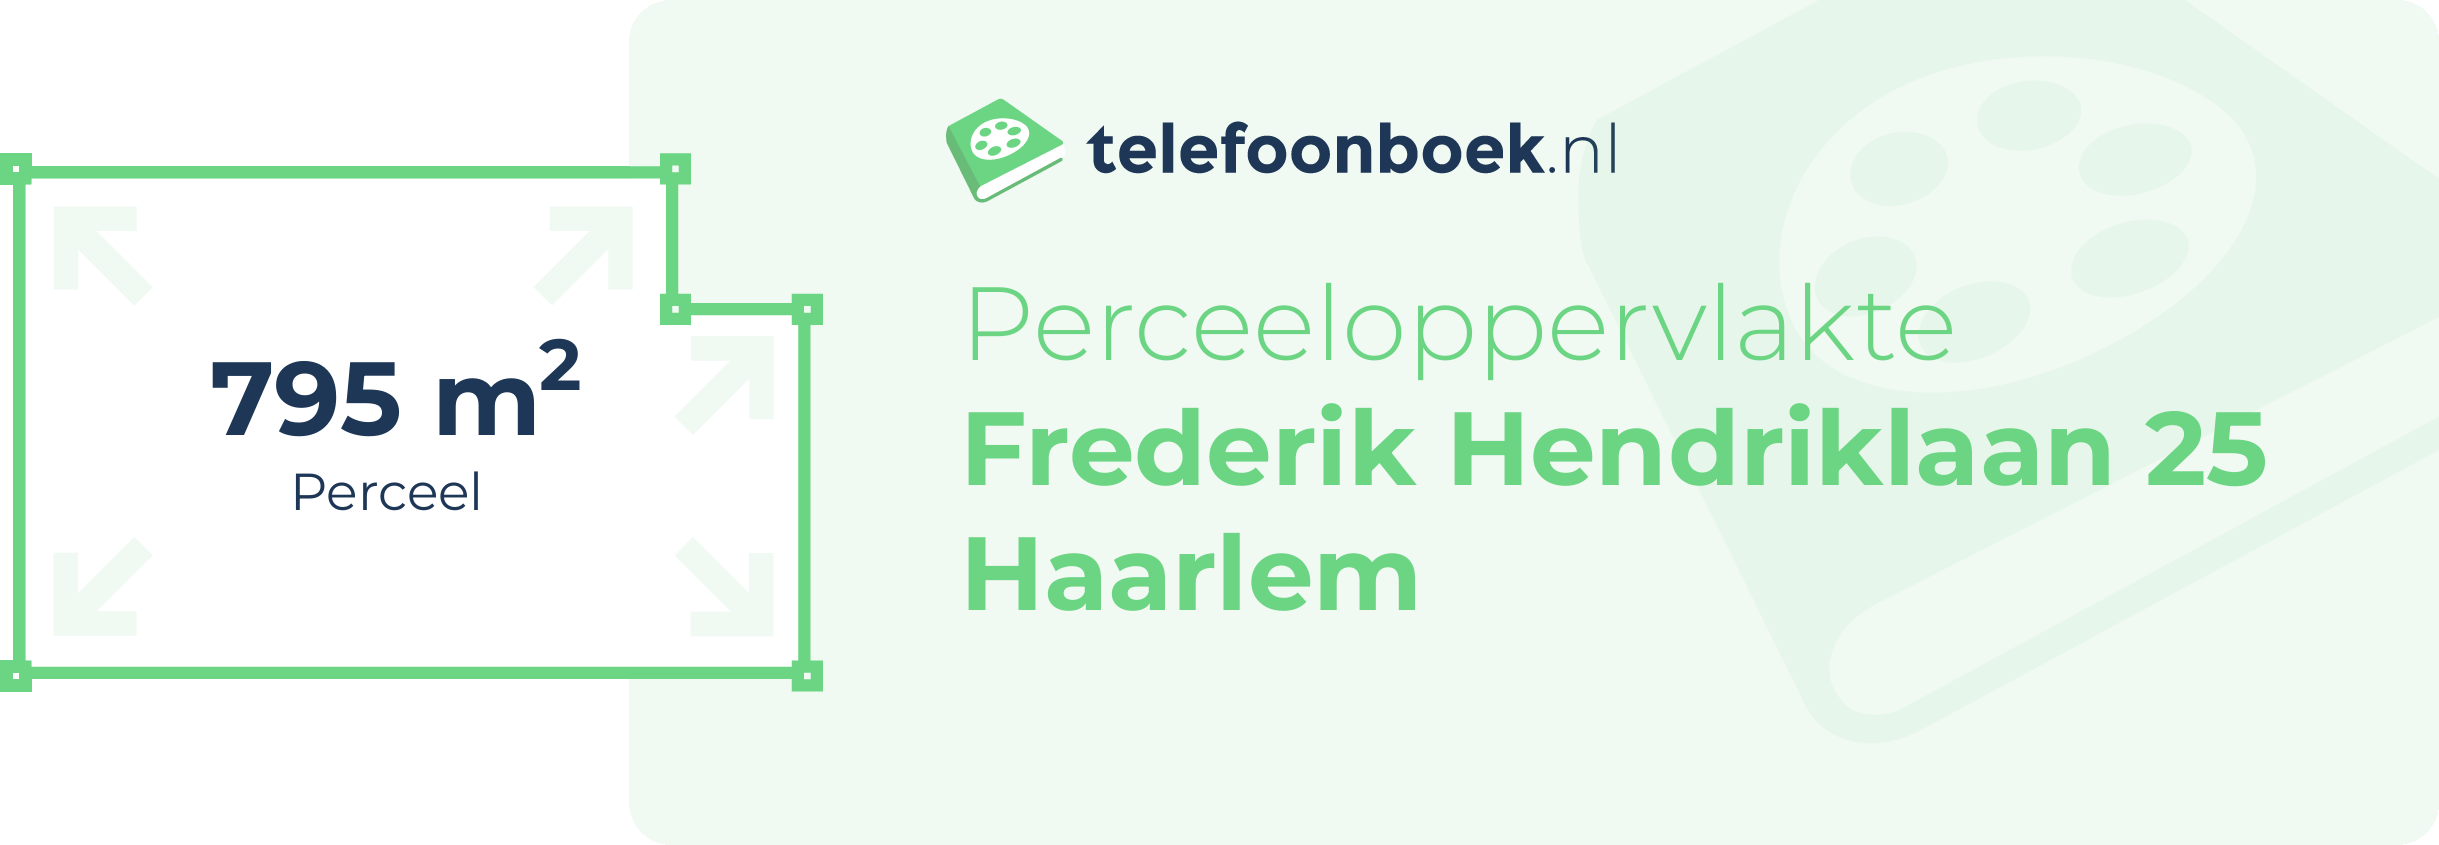 Perceeloppervlakte Frederik Hendriklaan 25 Haarlem